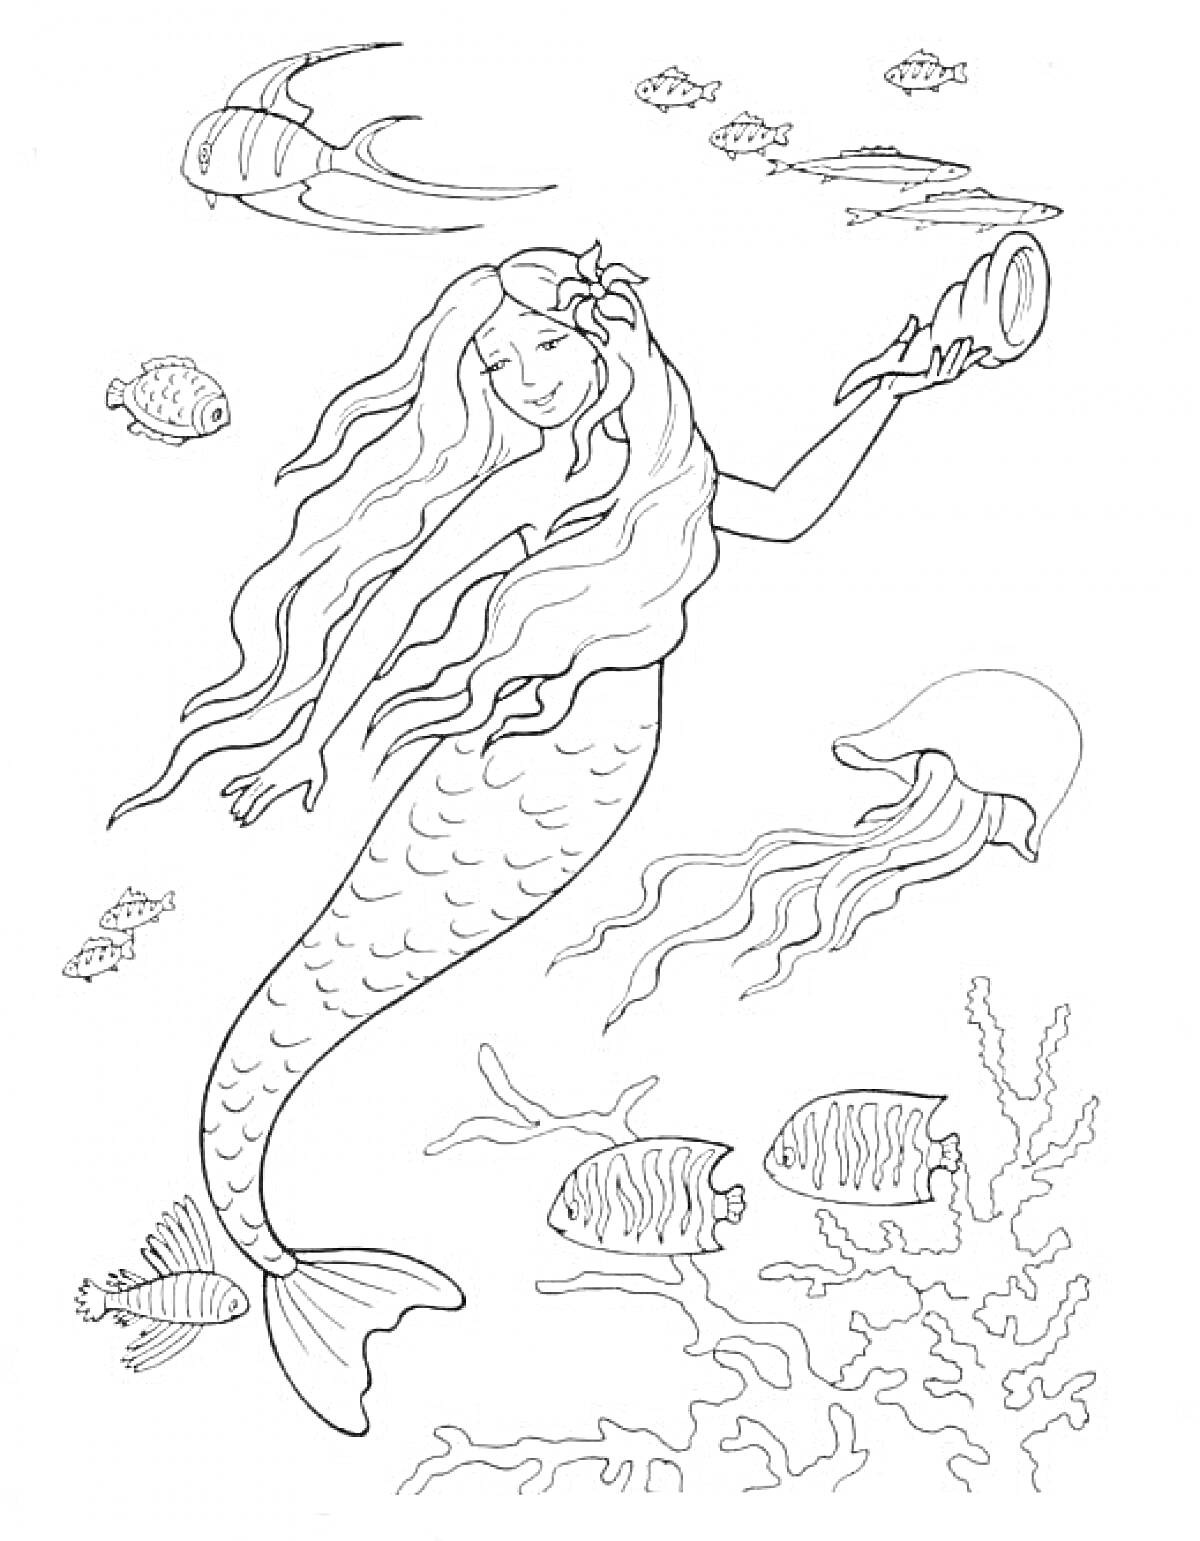 Раскраска Русалка с зеркалом среди подводных существ и кораллов (рыбы, медуза, морские растения)